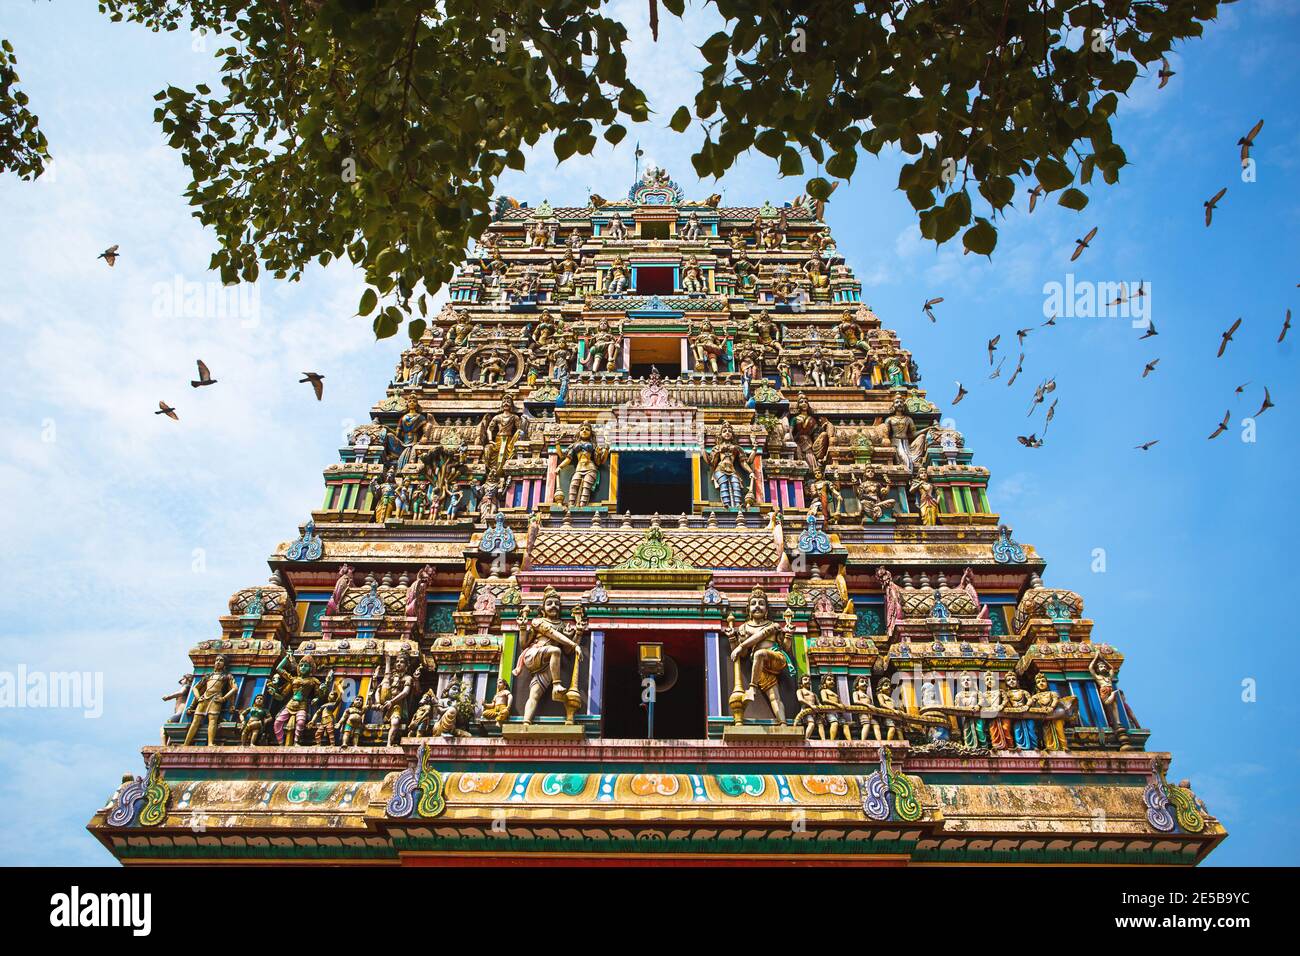 Traditioneller Hindu-Tempel Kidangamparambu Sree Bhuvaneswari in Indien in Allapuzha (Allepi) Kerala. Hohes Gebäude mit bunten Figuren von indischen mythol Stockfoto